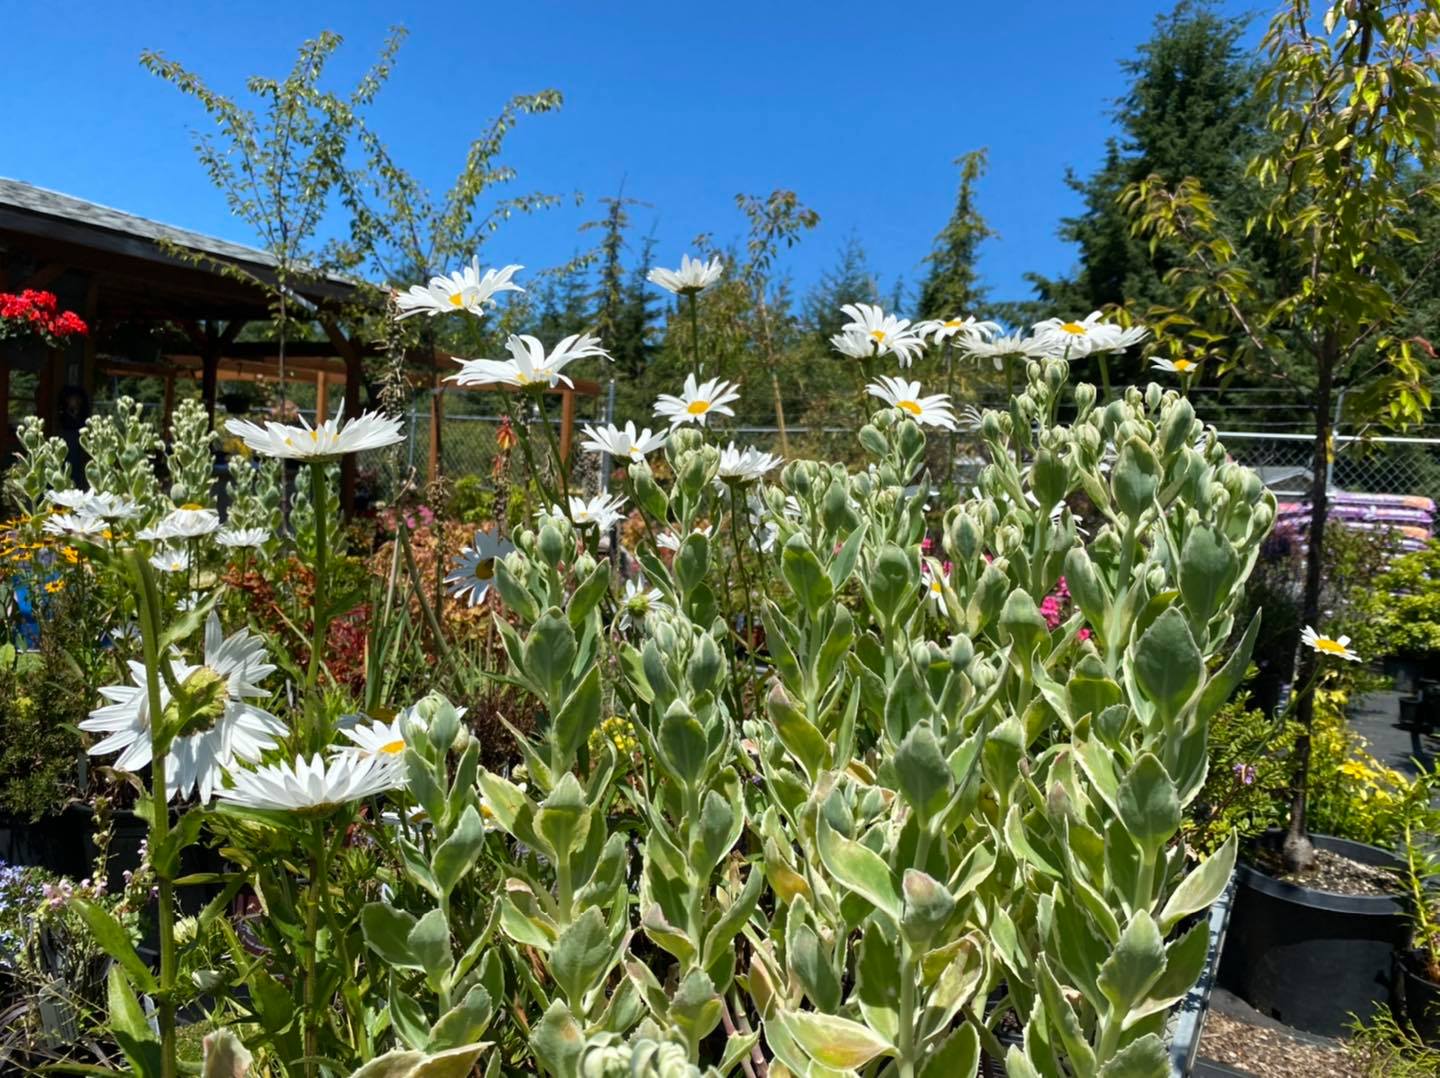 Flowers and blue skies at TLC Nursery in Reedsport, Oregon